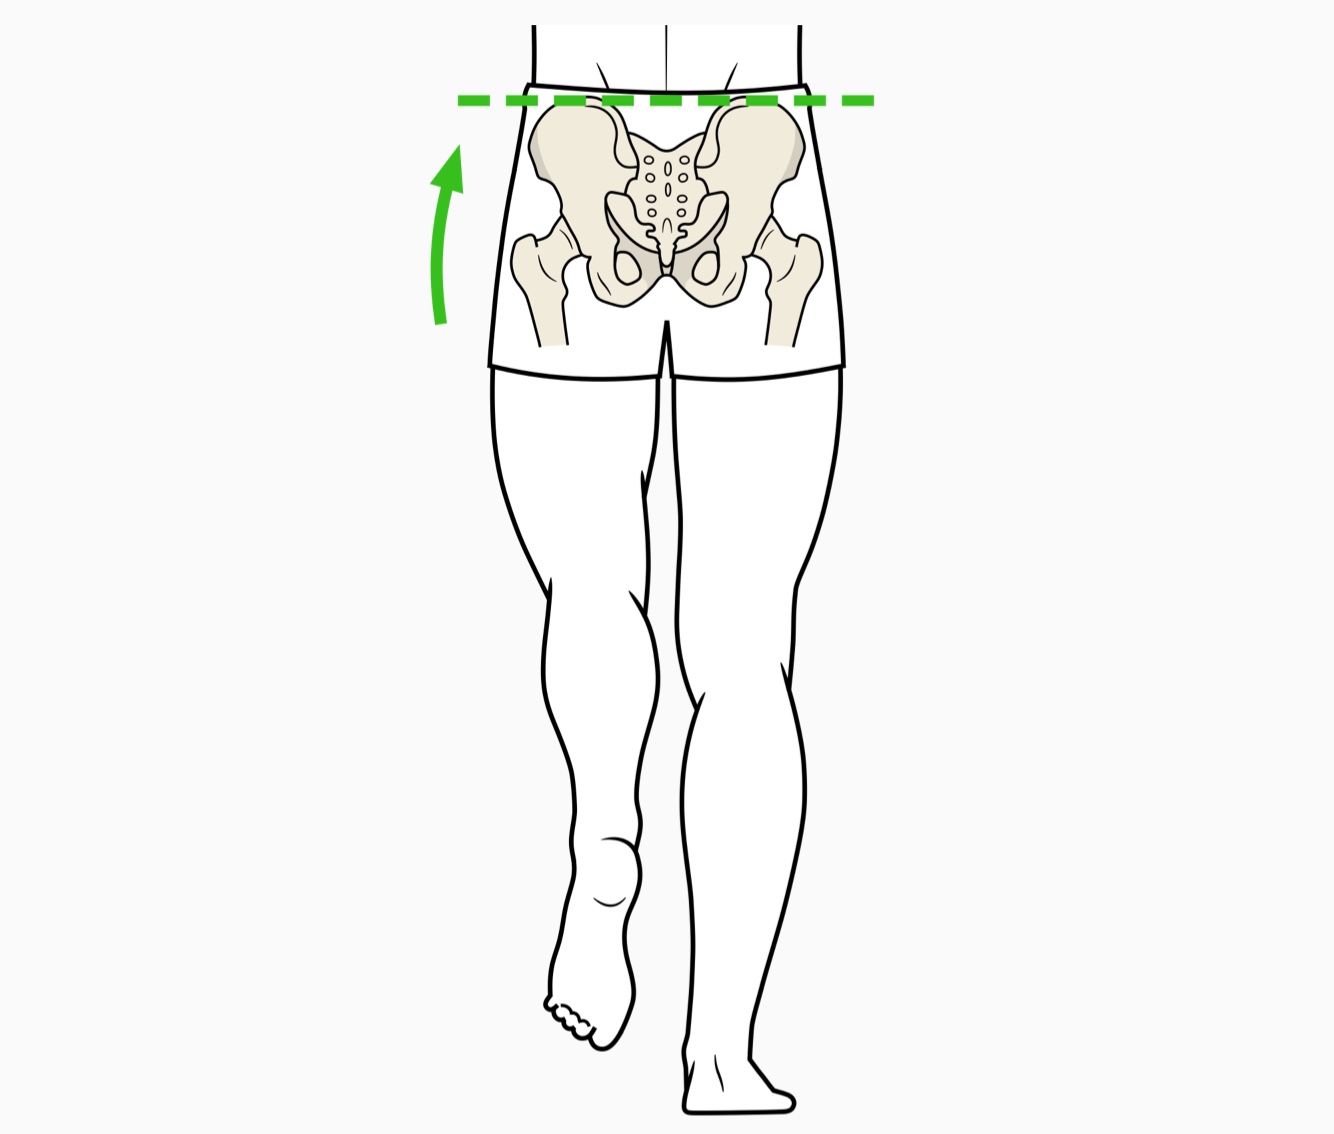 Positionnement correcte des hanches